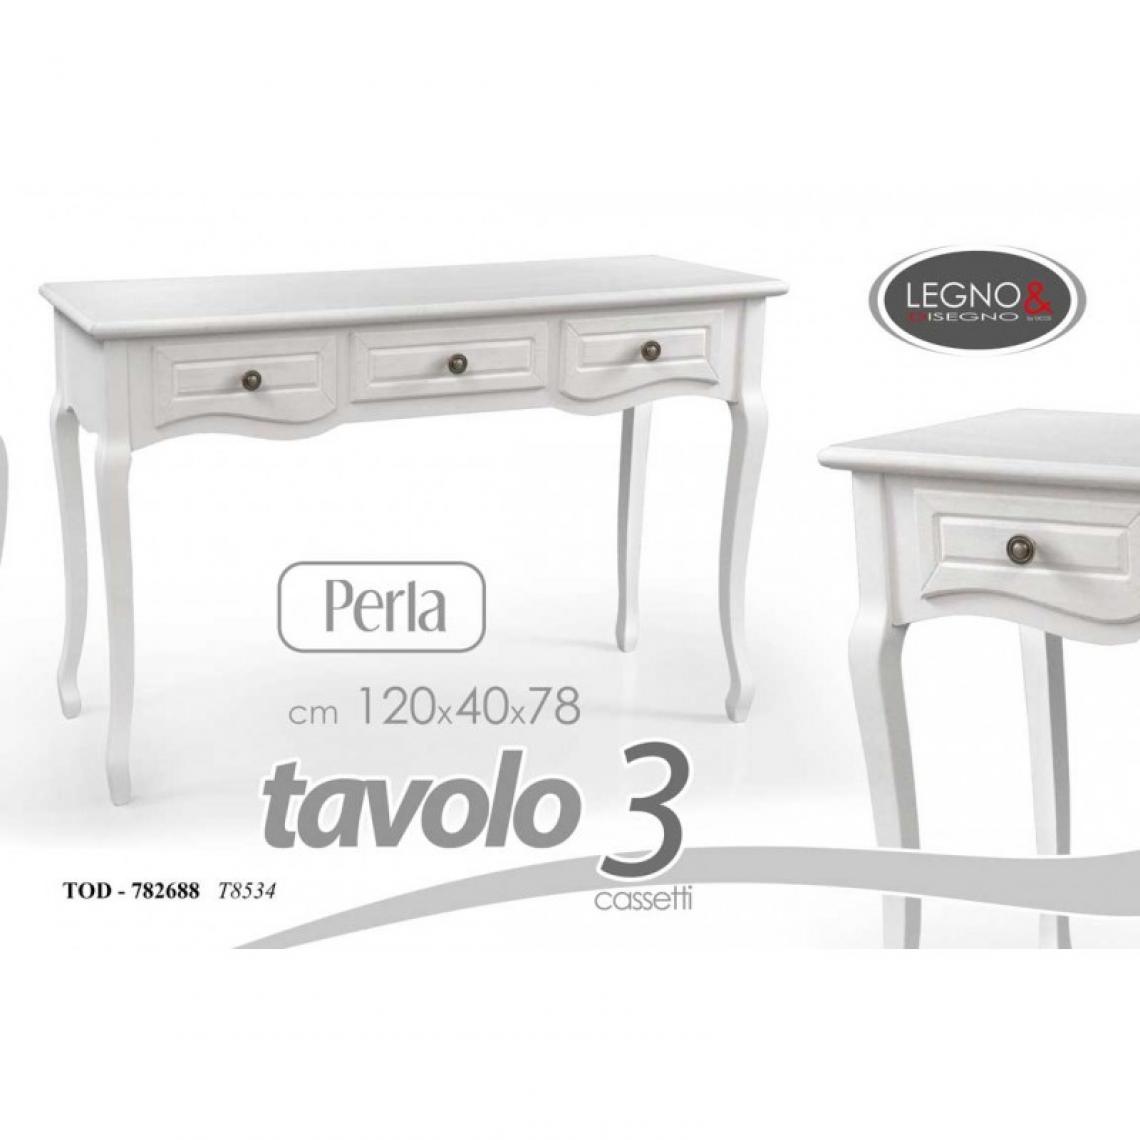 Webmarketpoint - Élégante table shabby blanche 120x40x78h trois tiroirs - Tables à manger